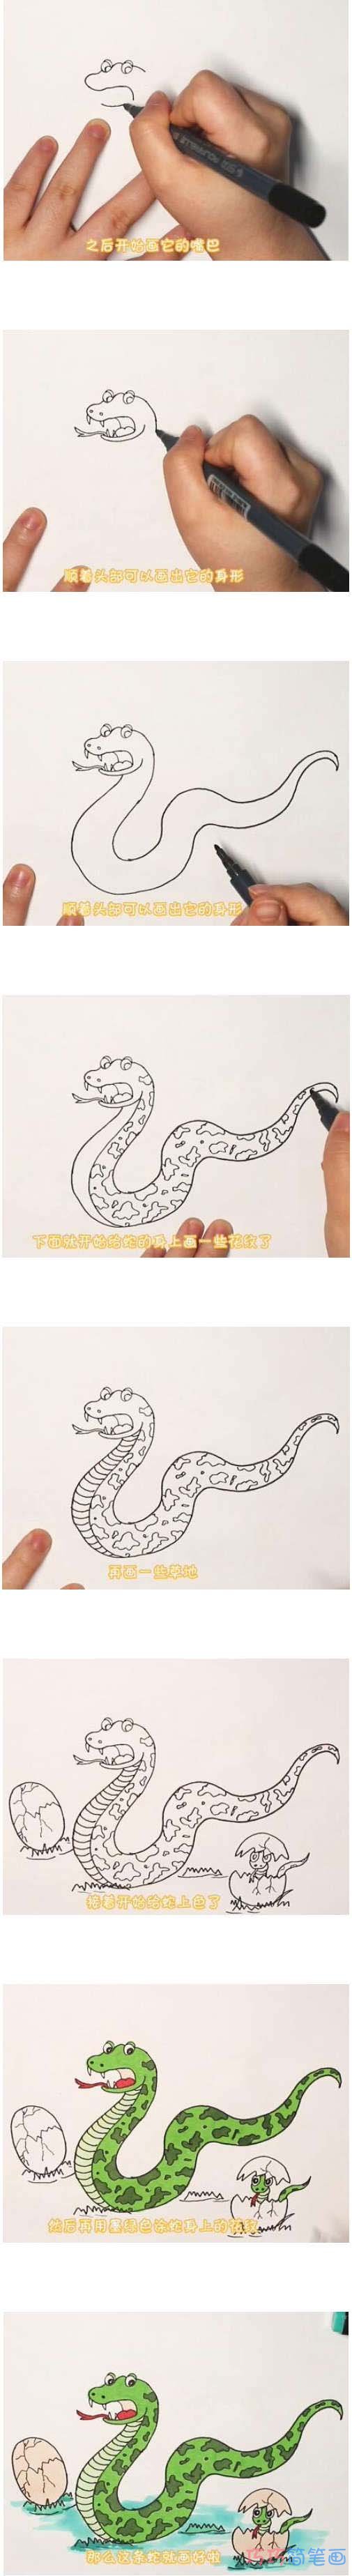 教你怎么画蛇简笔画步骤教程涂颜色